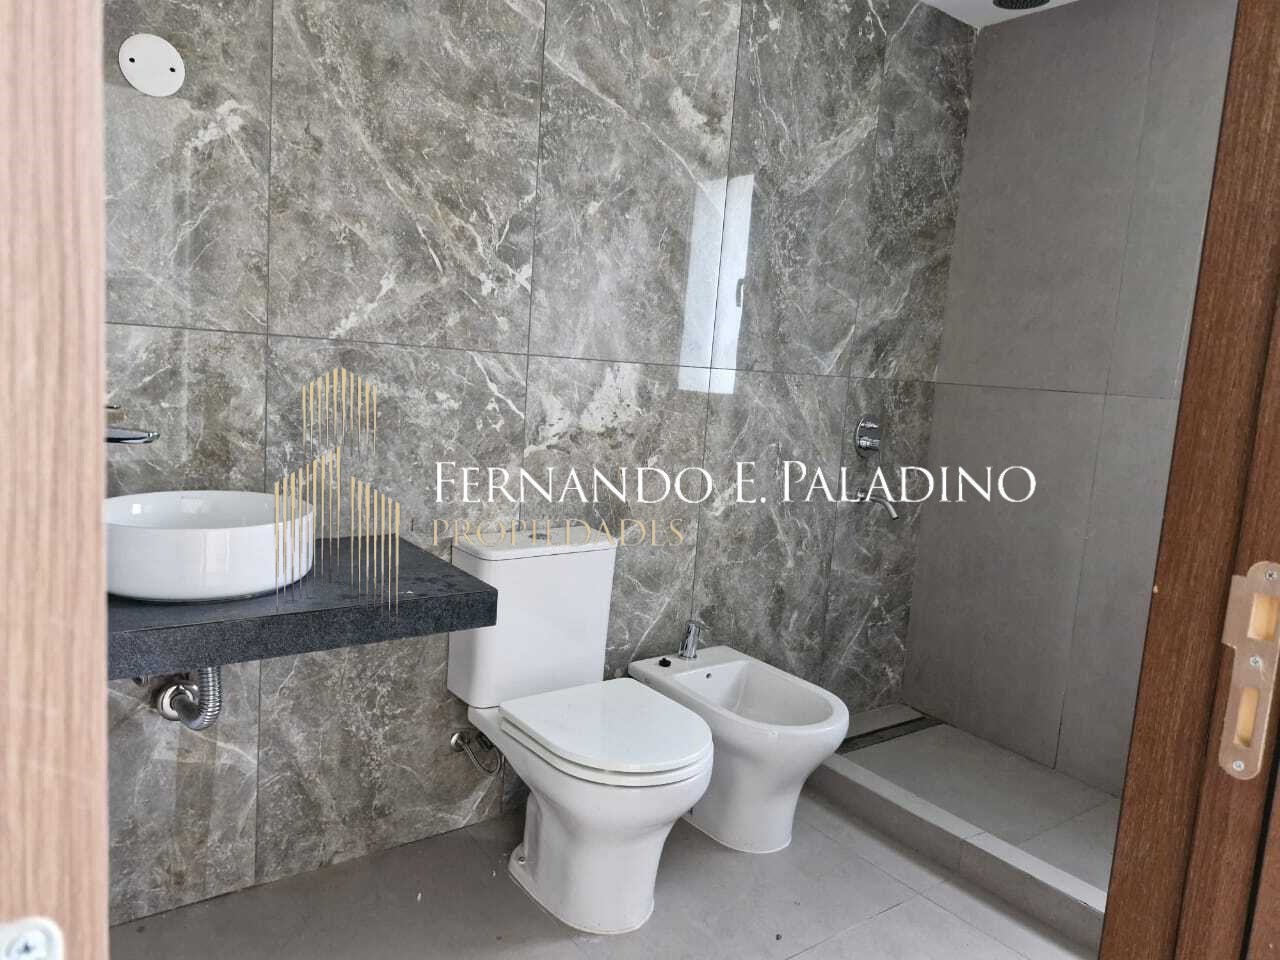 #5072698 | Sale | House | El Jaguel (Fernando E. Paladino Propiedades)